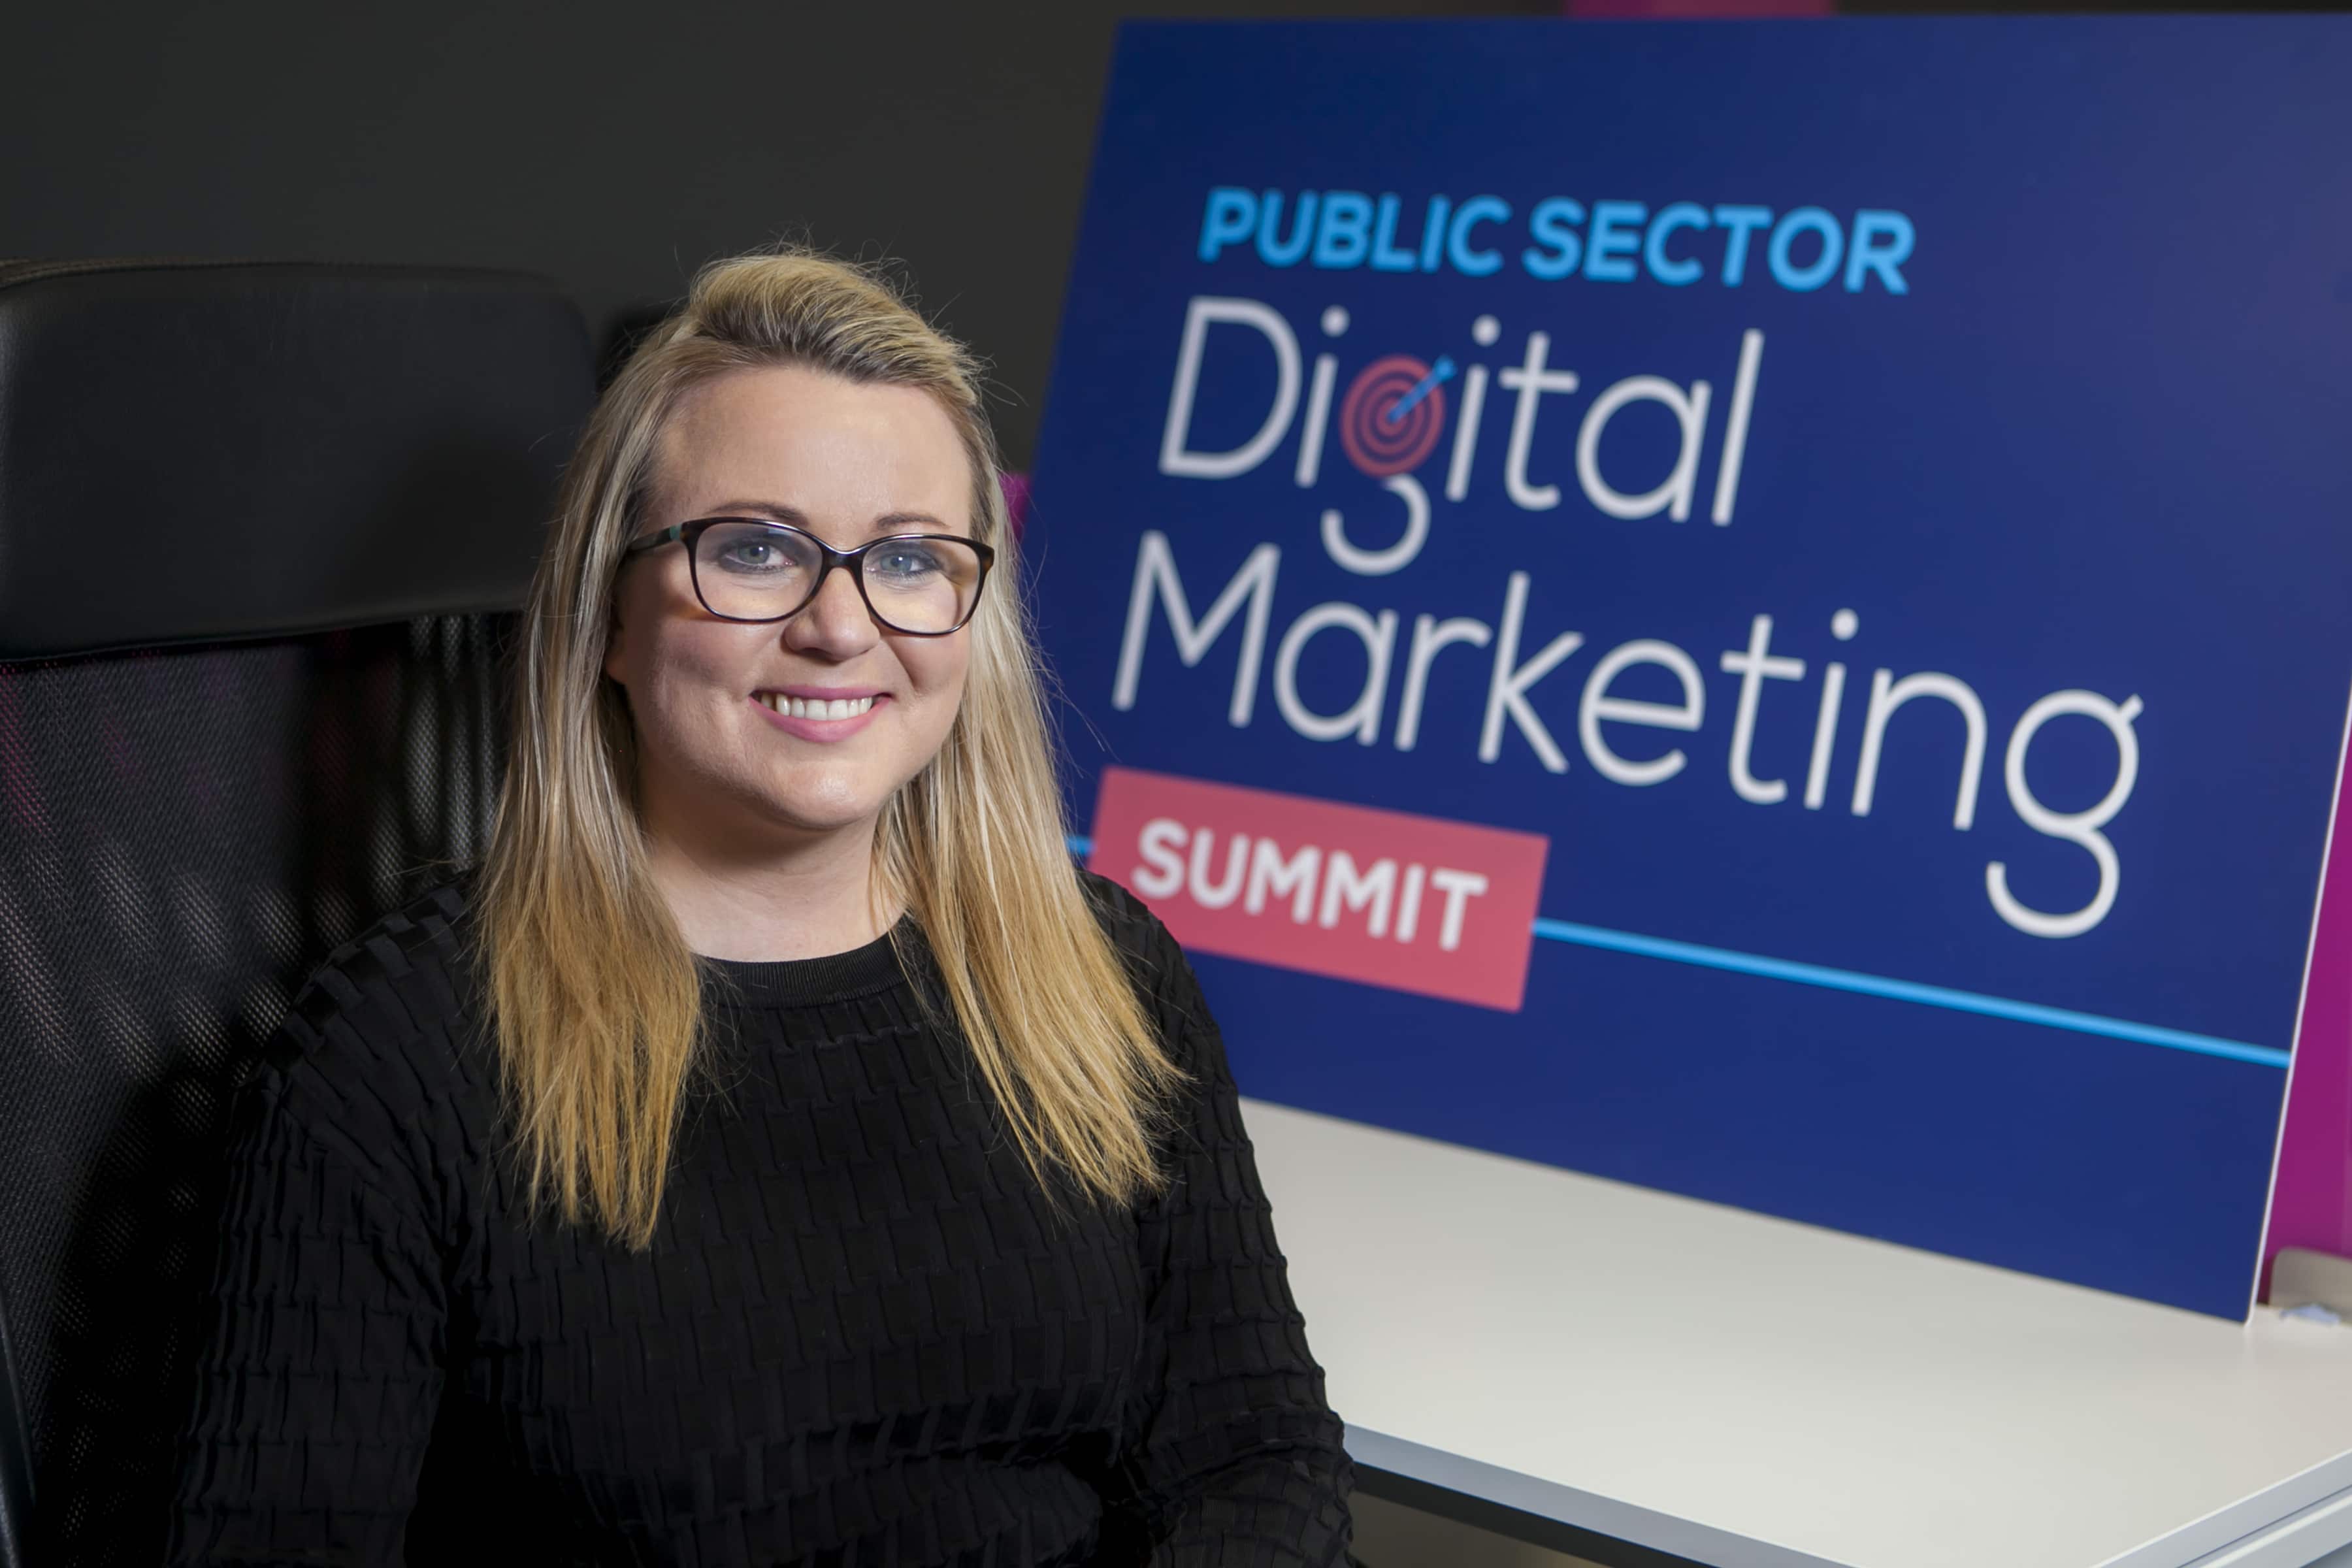 Joanne Sweeney-Burke organiser of the Public Sector Digital Marketing Summit